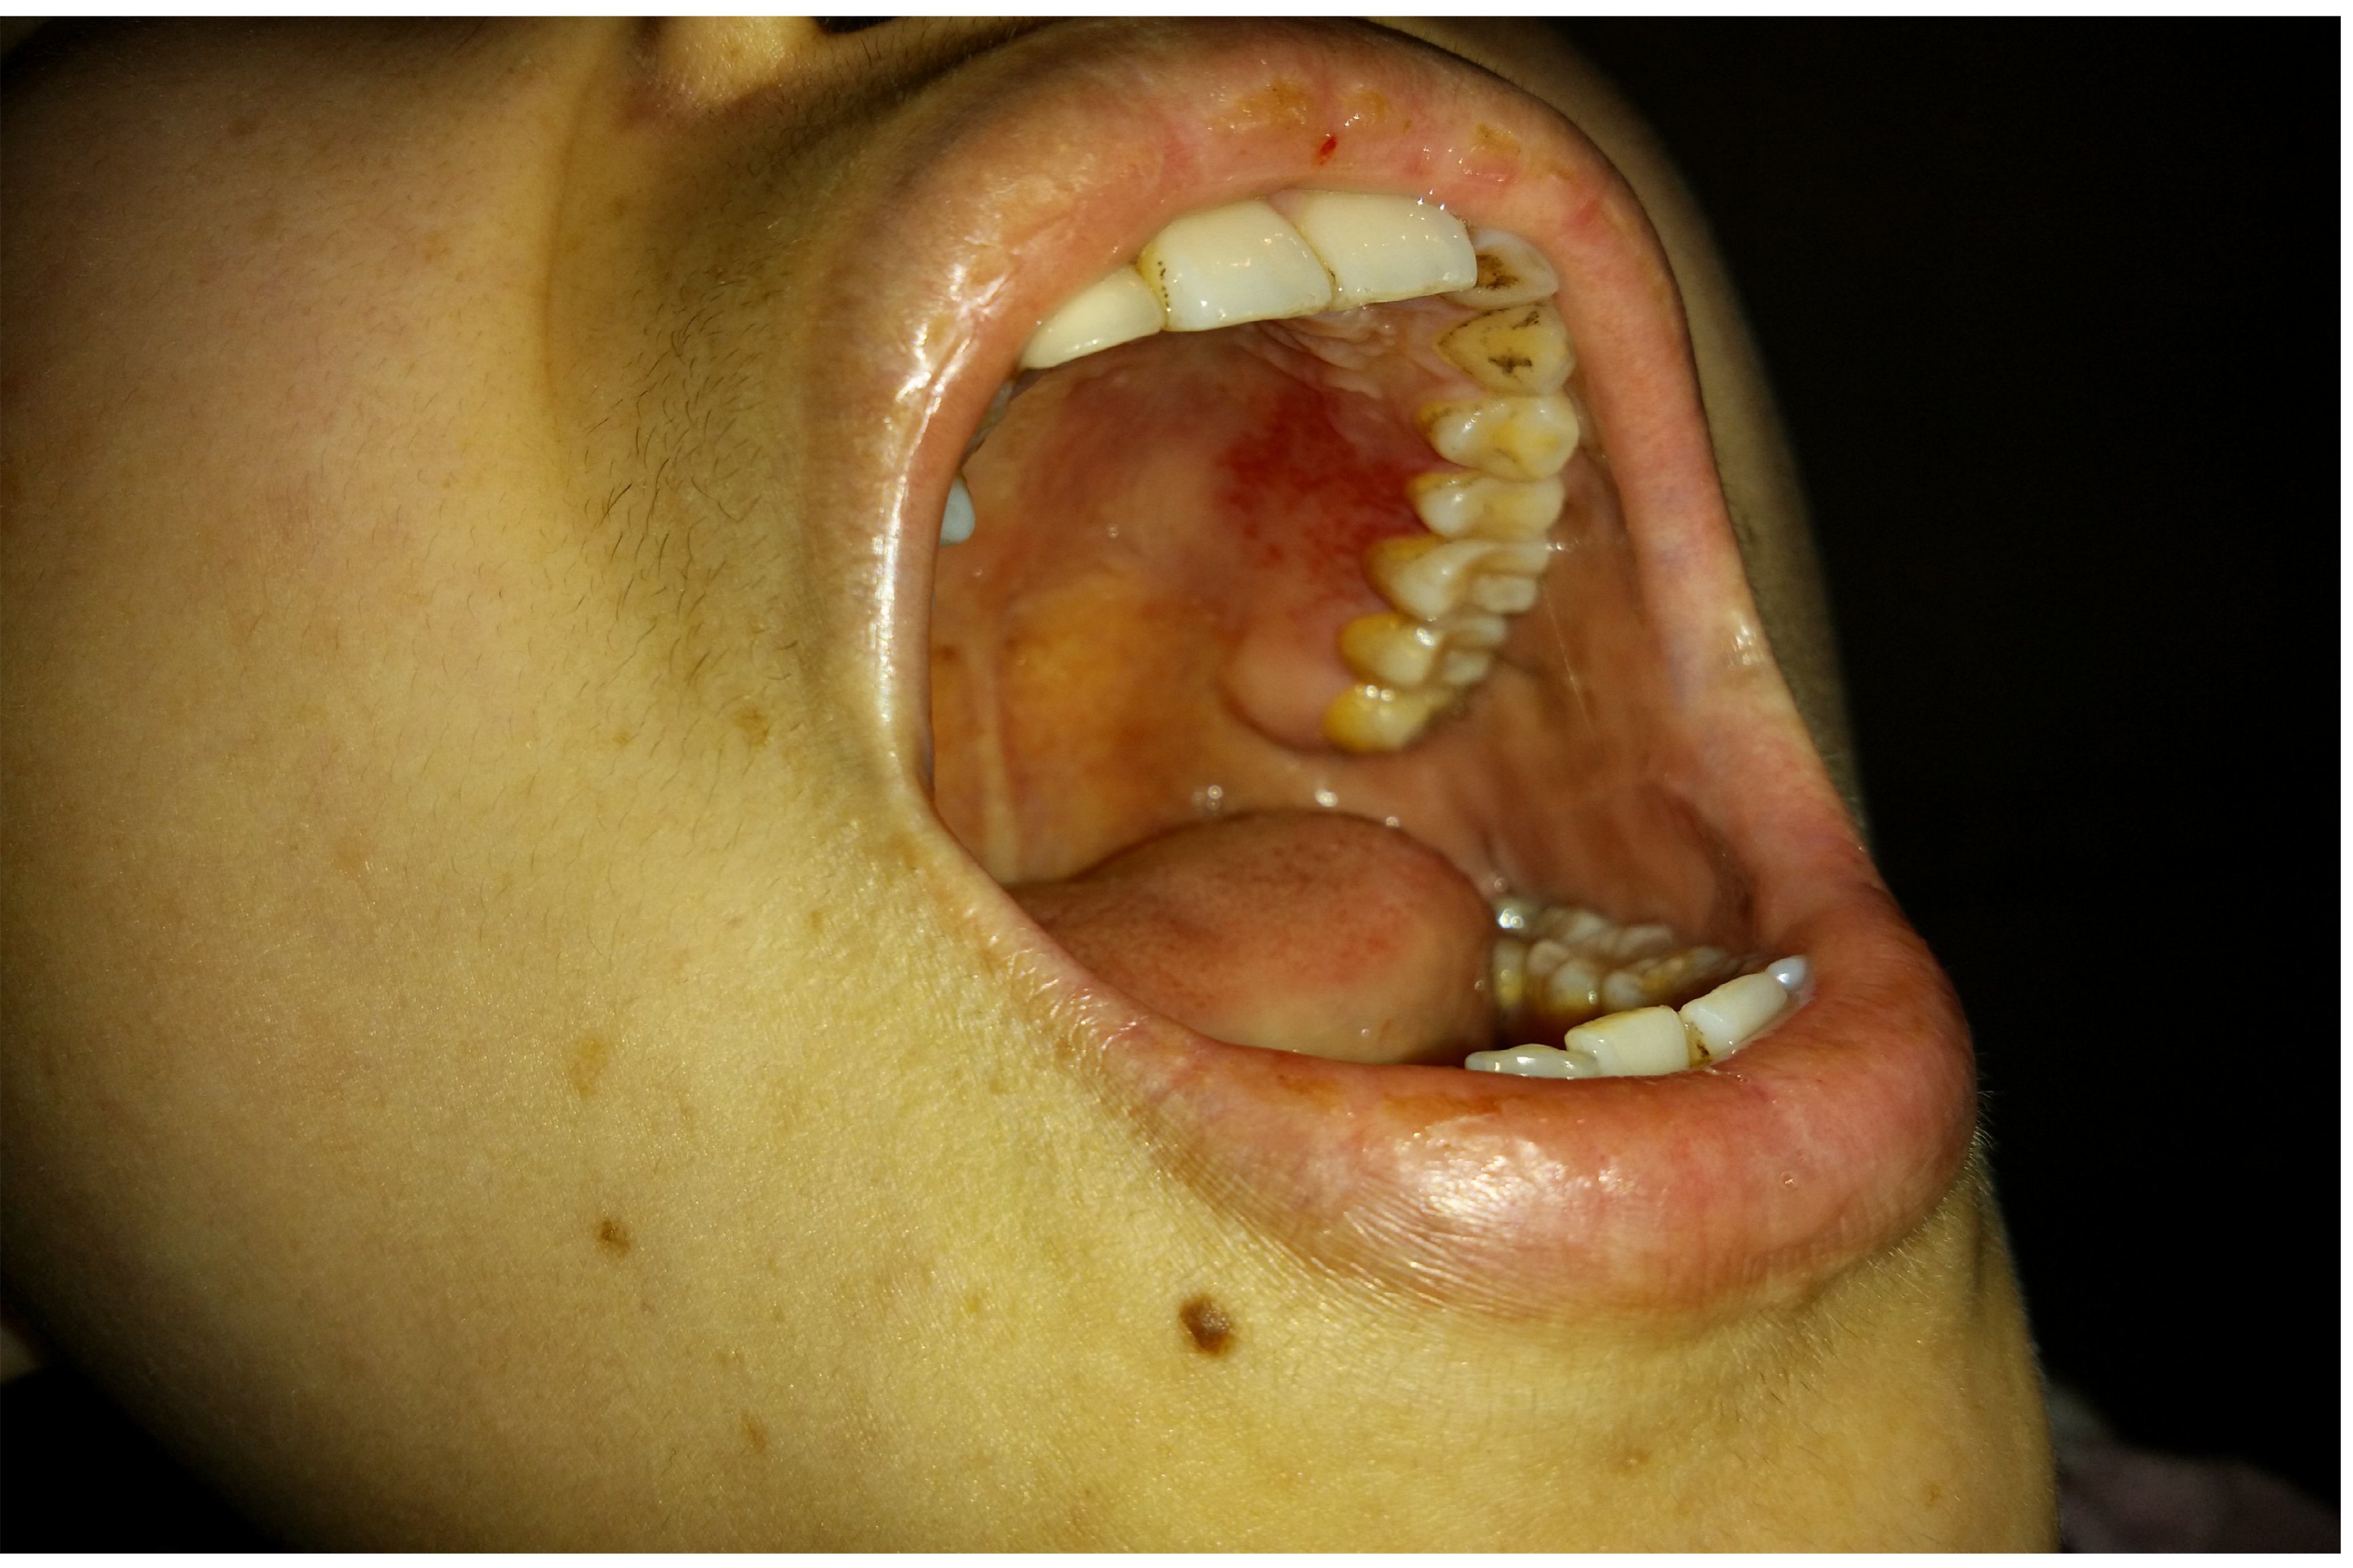 口腔出血:口腔出血可能发生在牙龈,黏膜等部位,可能存在继发感染的